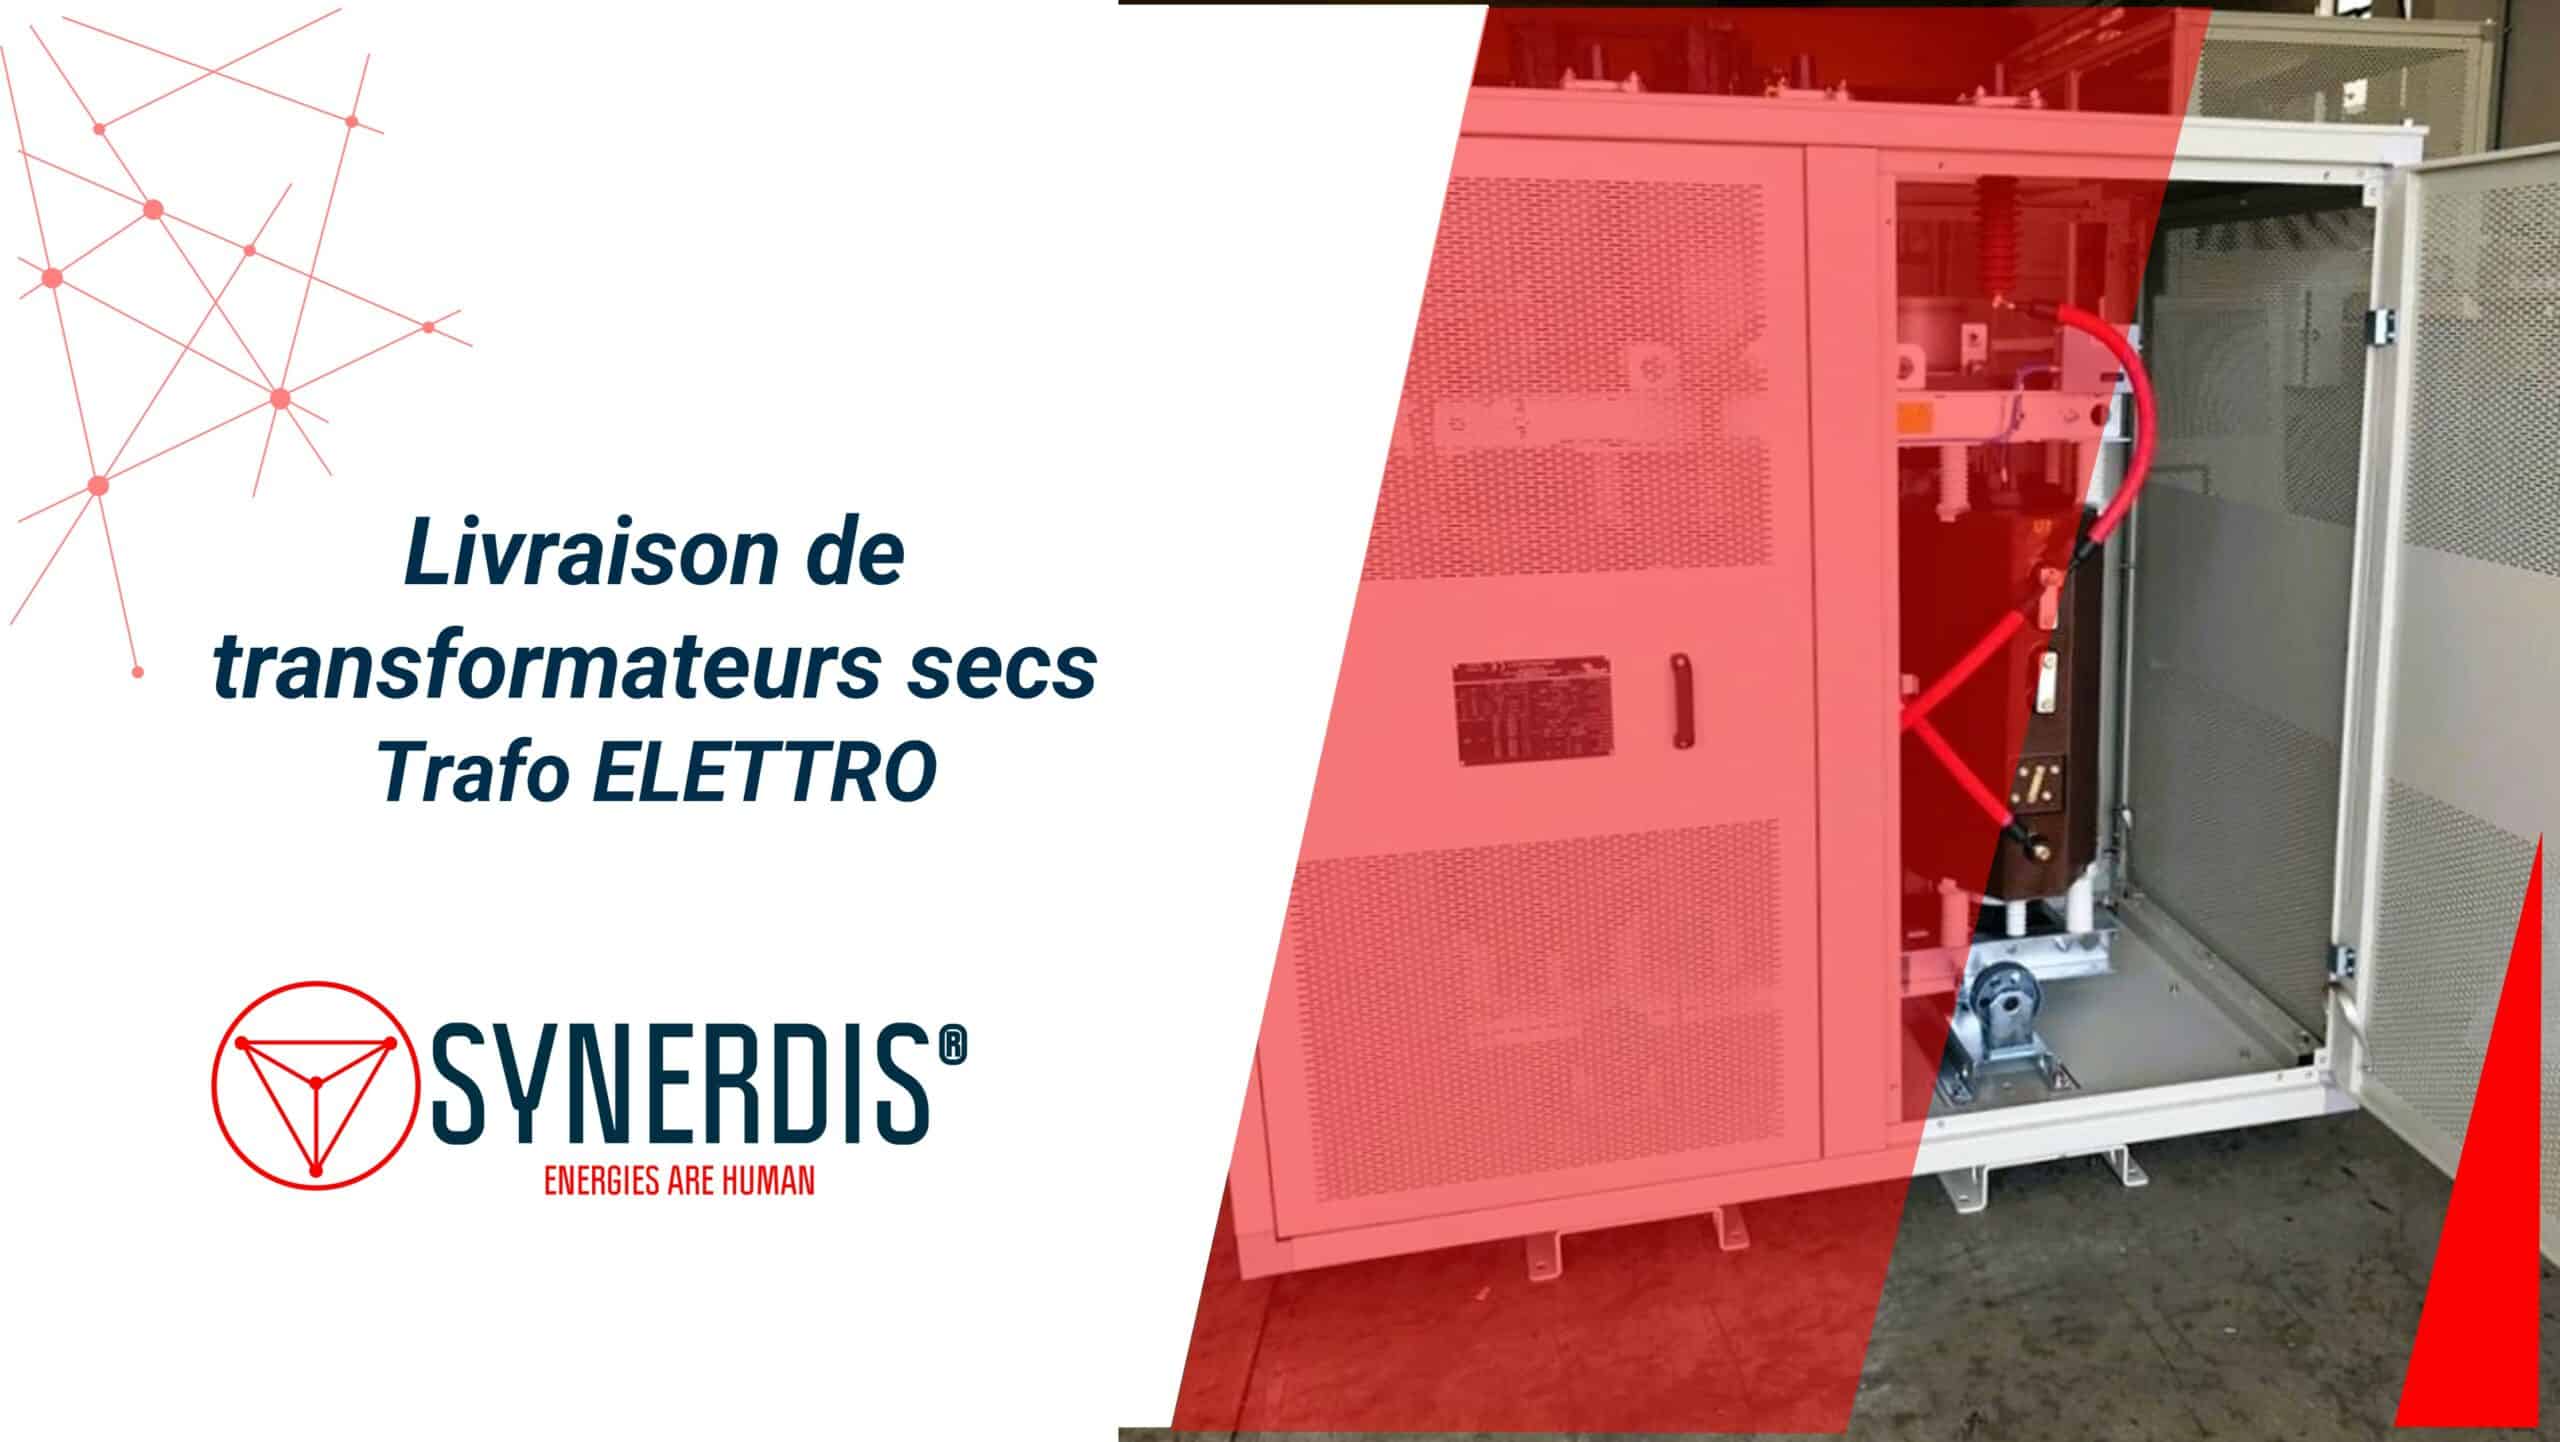 Livraison de transformateurs secs Trafo ELETTRO pour des grands industriels français